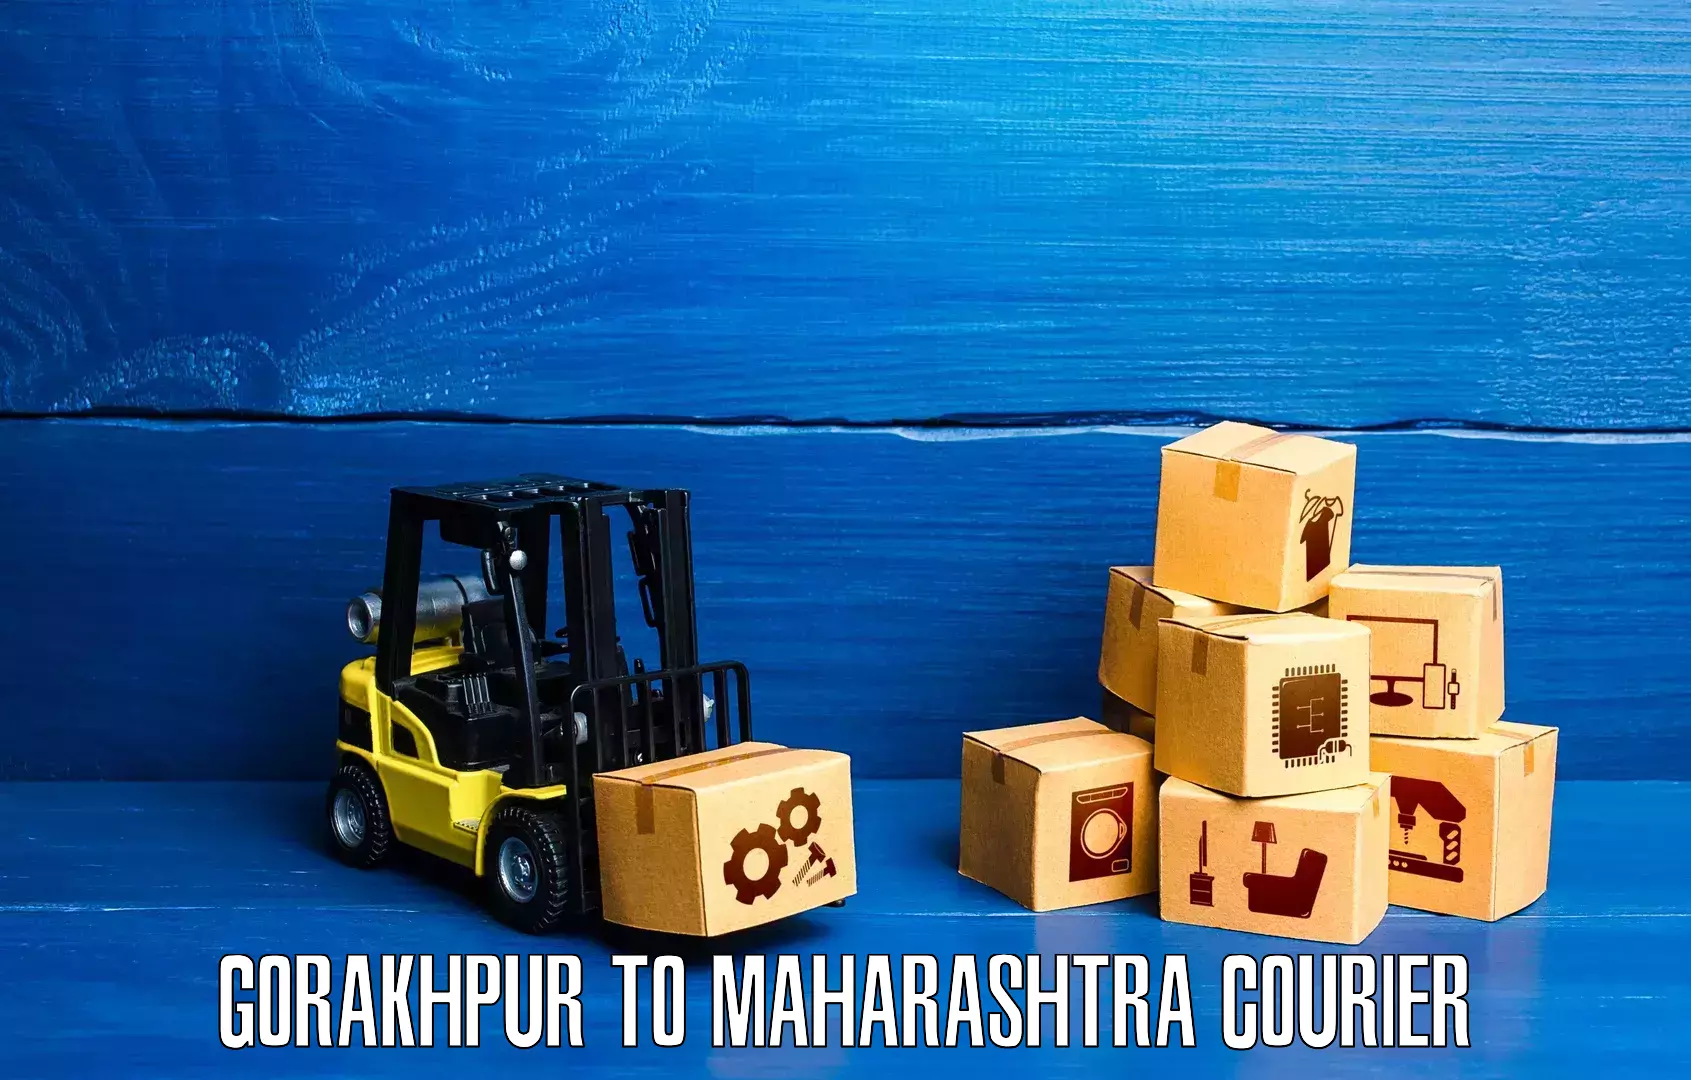 Courier service partnerships Gorakhpur to Fardapur